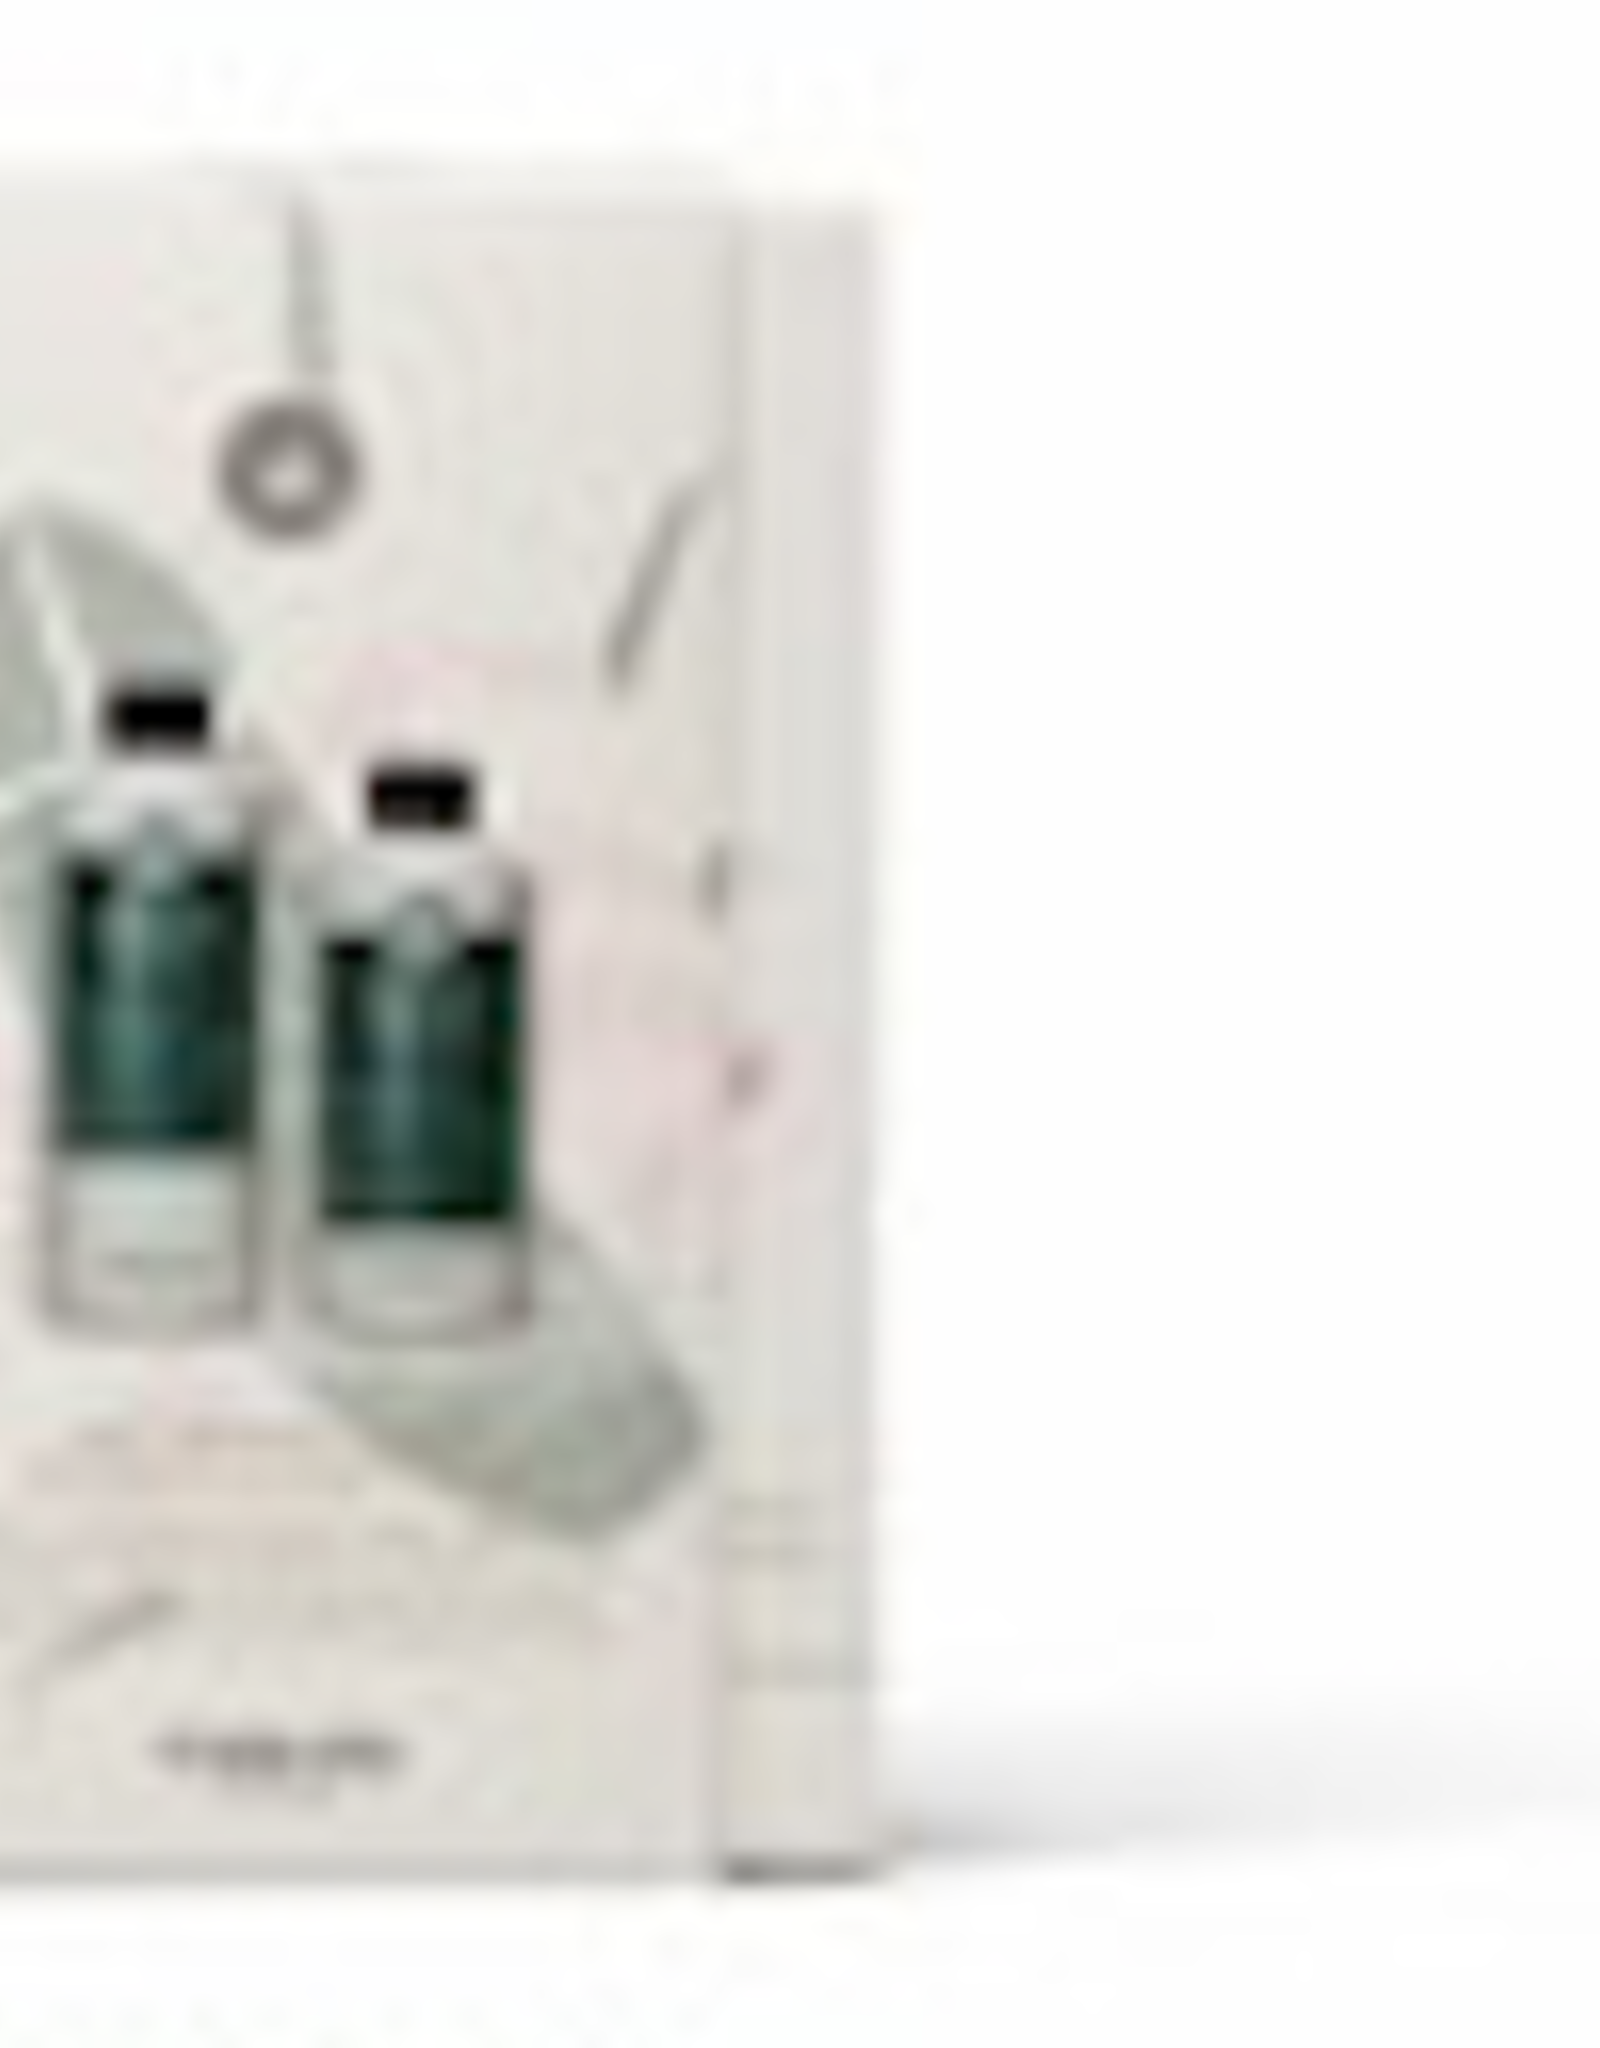 Maria Nila Eco Therapy Revive - Shampoo 350ml & Conditioner 300ml